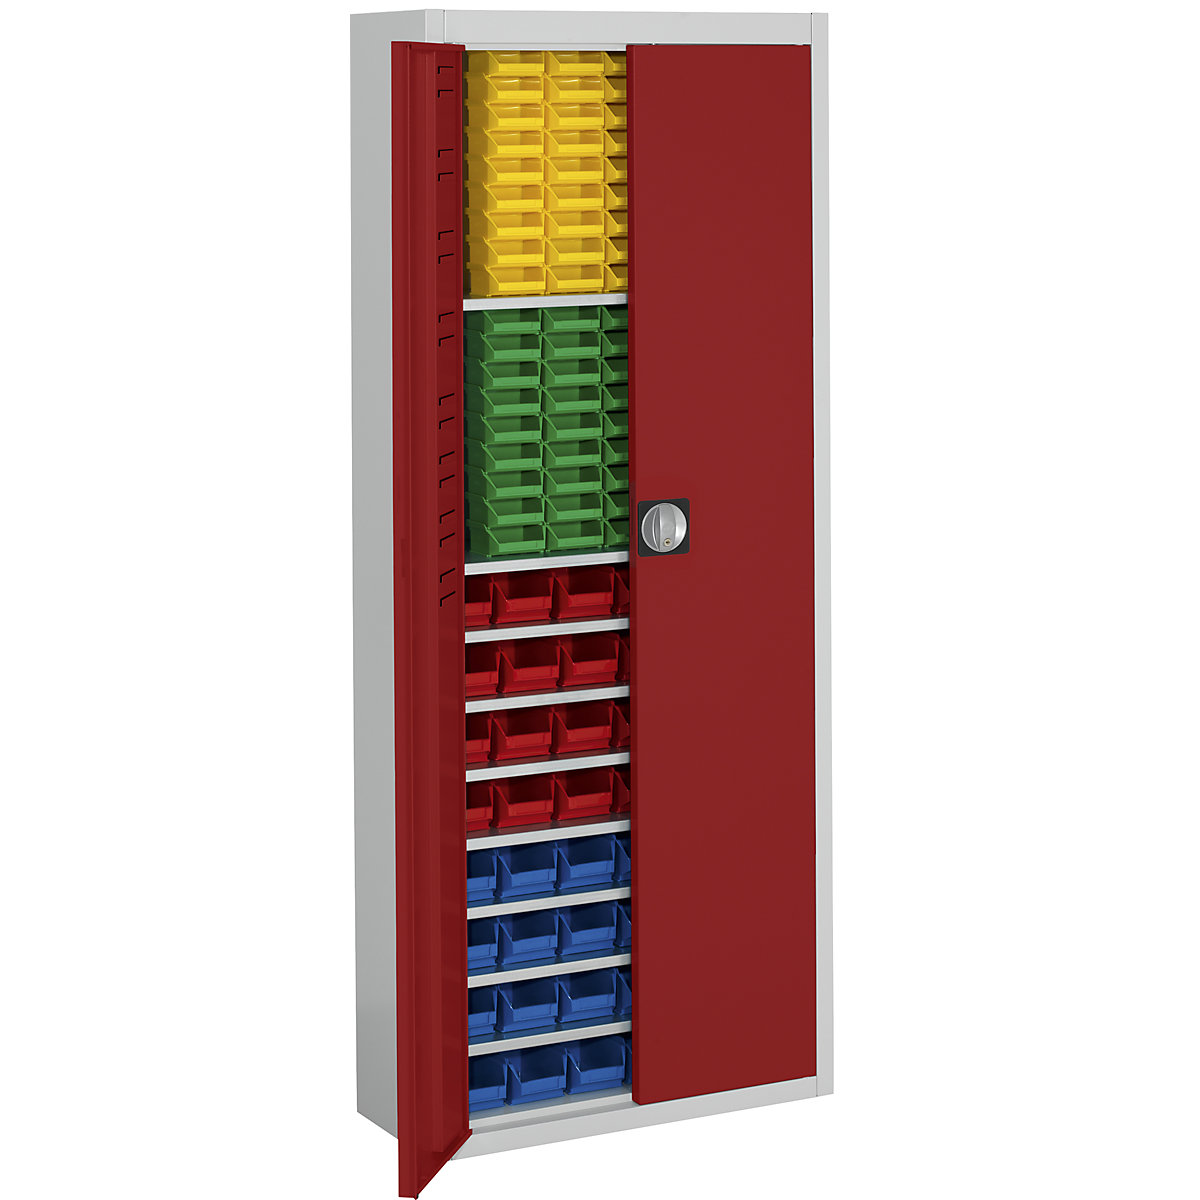 Magazijnkast met magazijnbakken – mauser, h x b x d = 1740 x 680 x 280 mm, tweekleurig, kastframe grijs, deuren rood, 138 bakken-14